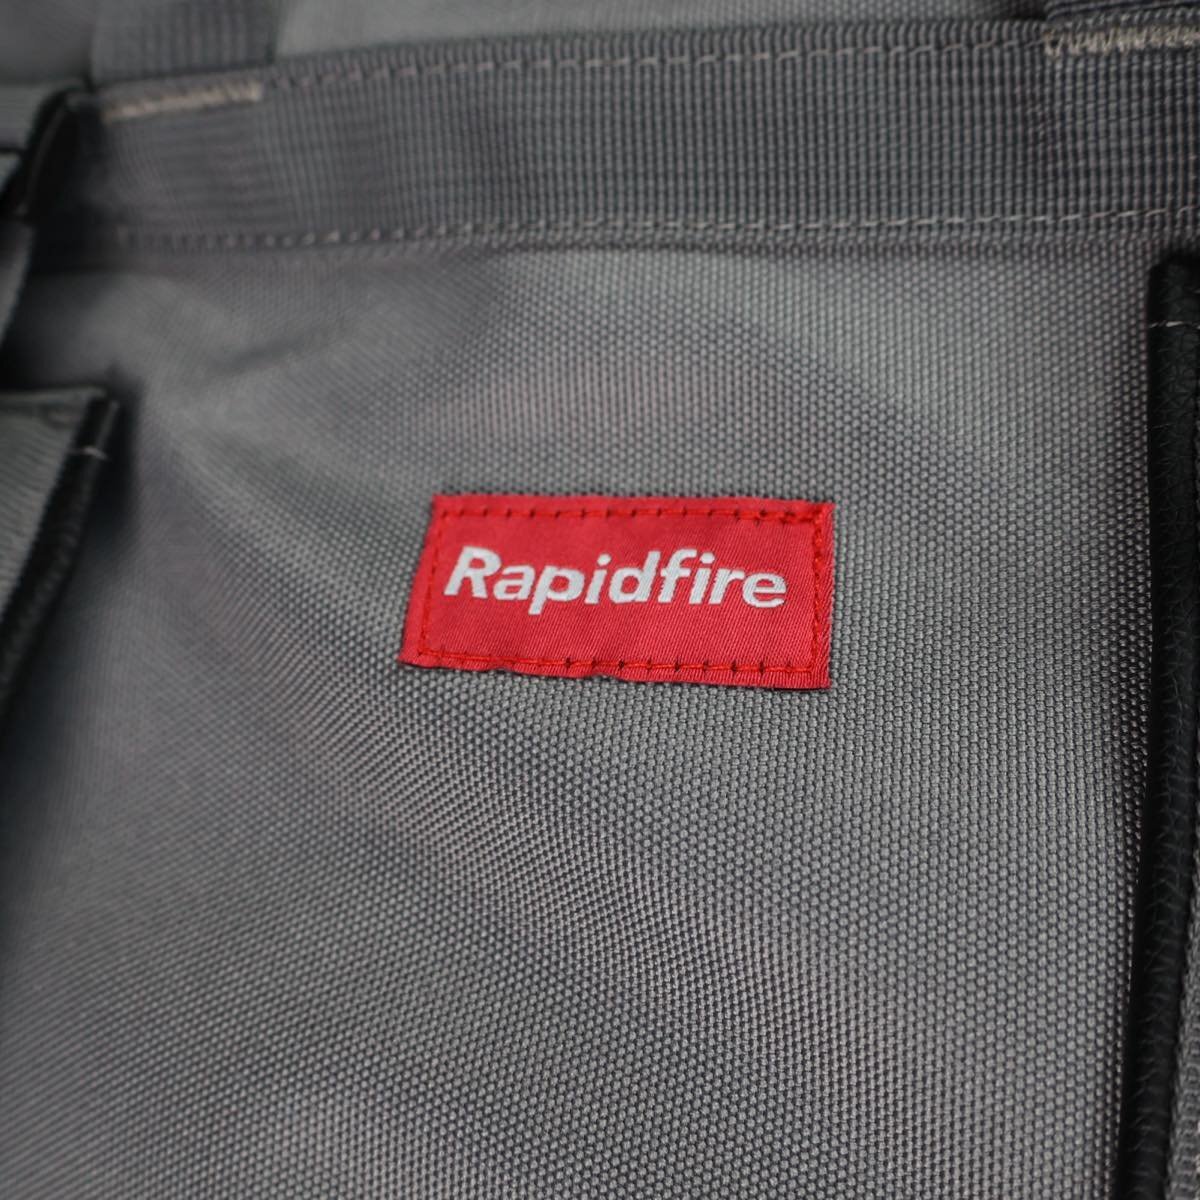 rapidfire ガンケース グレー #11241_画像3